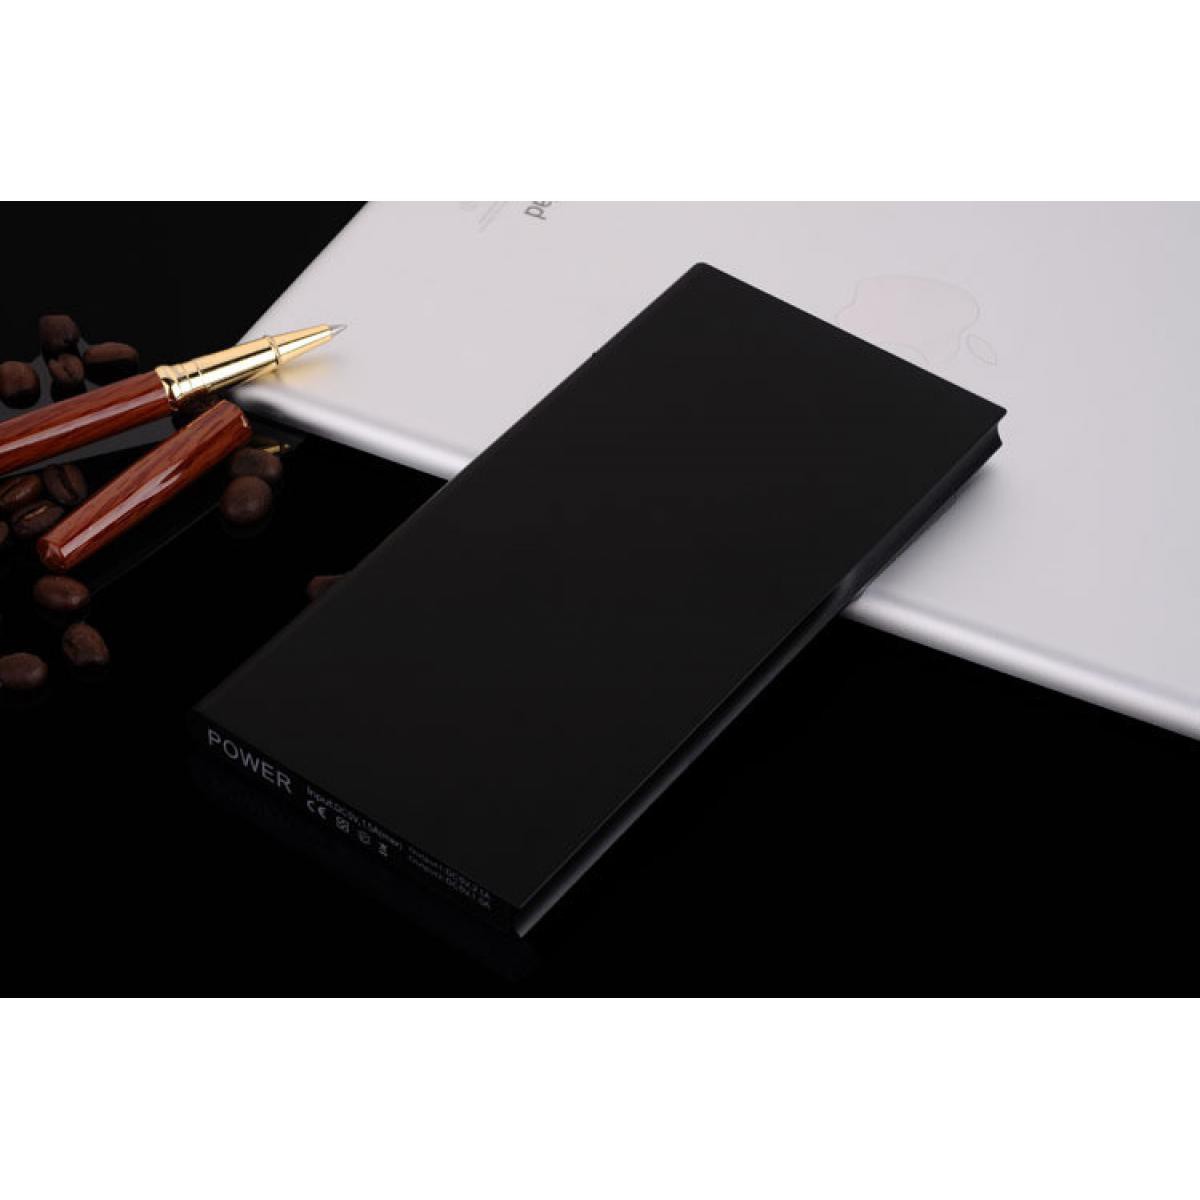 Shot - Batterie Externe Plate pour SAMSUNG Galaxy A20e Smartphone Tablette Chargeur Power Bank 6000mAh 2 Port USB (NOIR) - Chargeur secteur téléphone